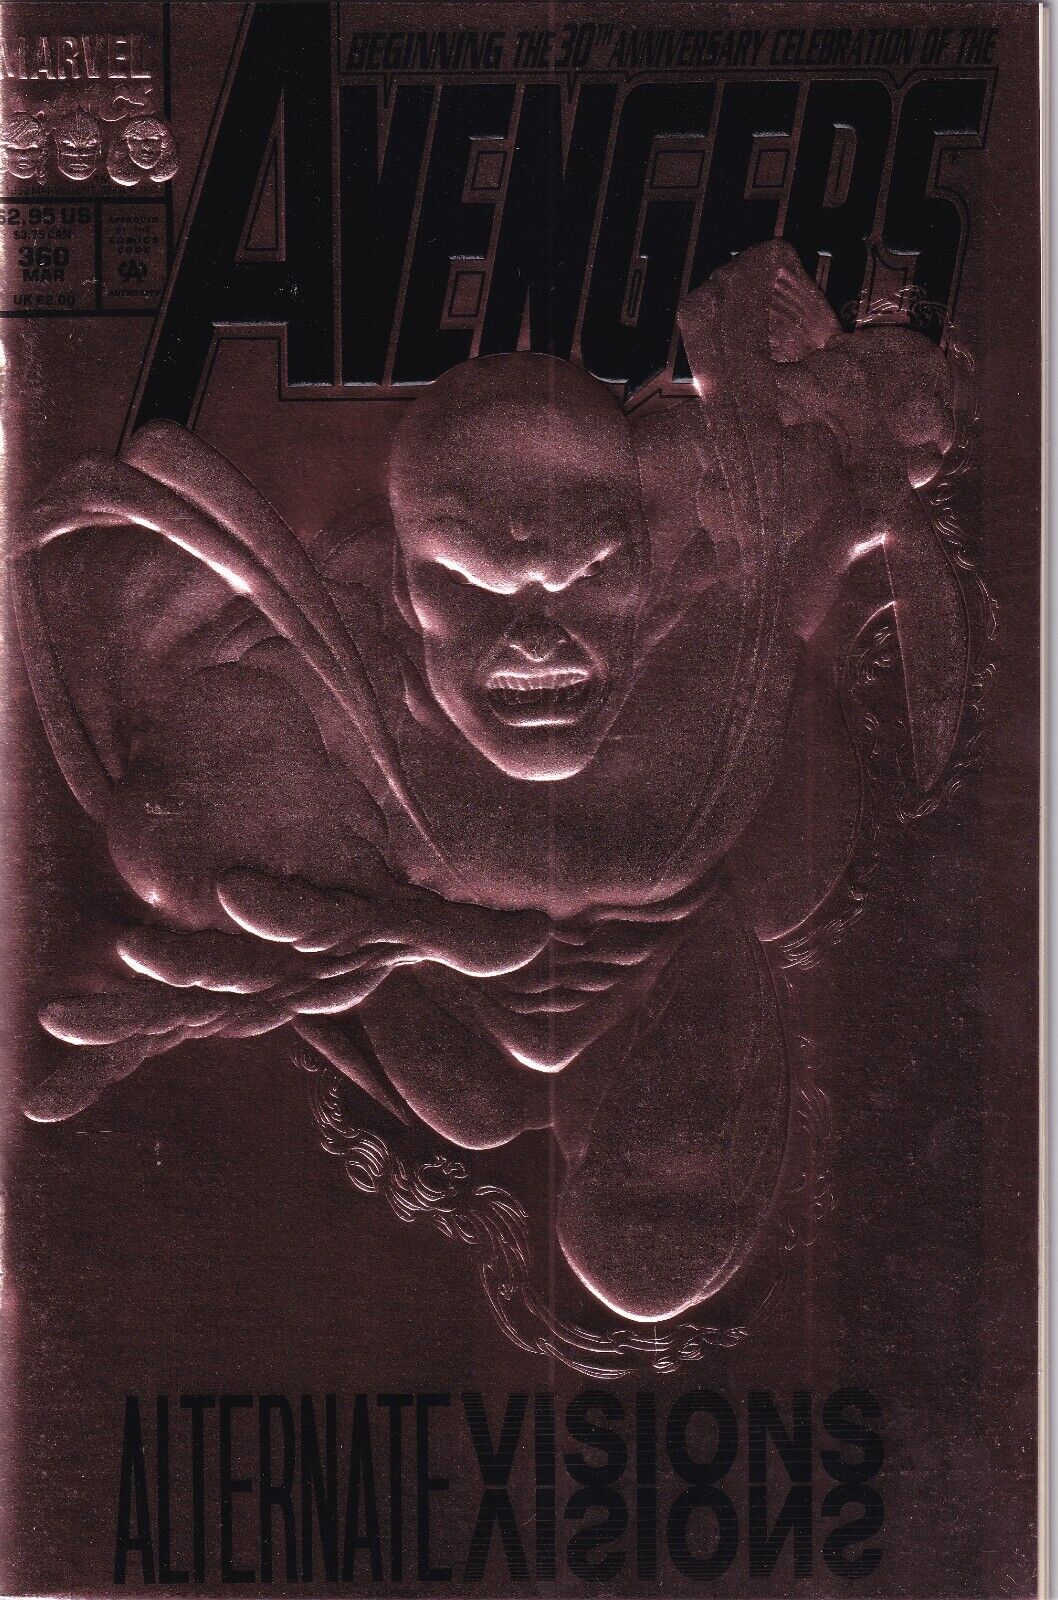 Avengers (1963) Alternate Visions 30th Anniv. Bronze Foil Embossed Cover Marvel